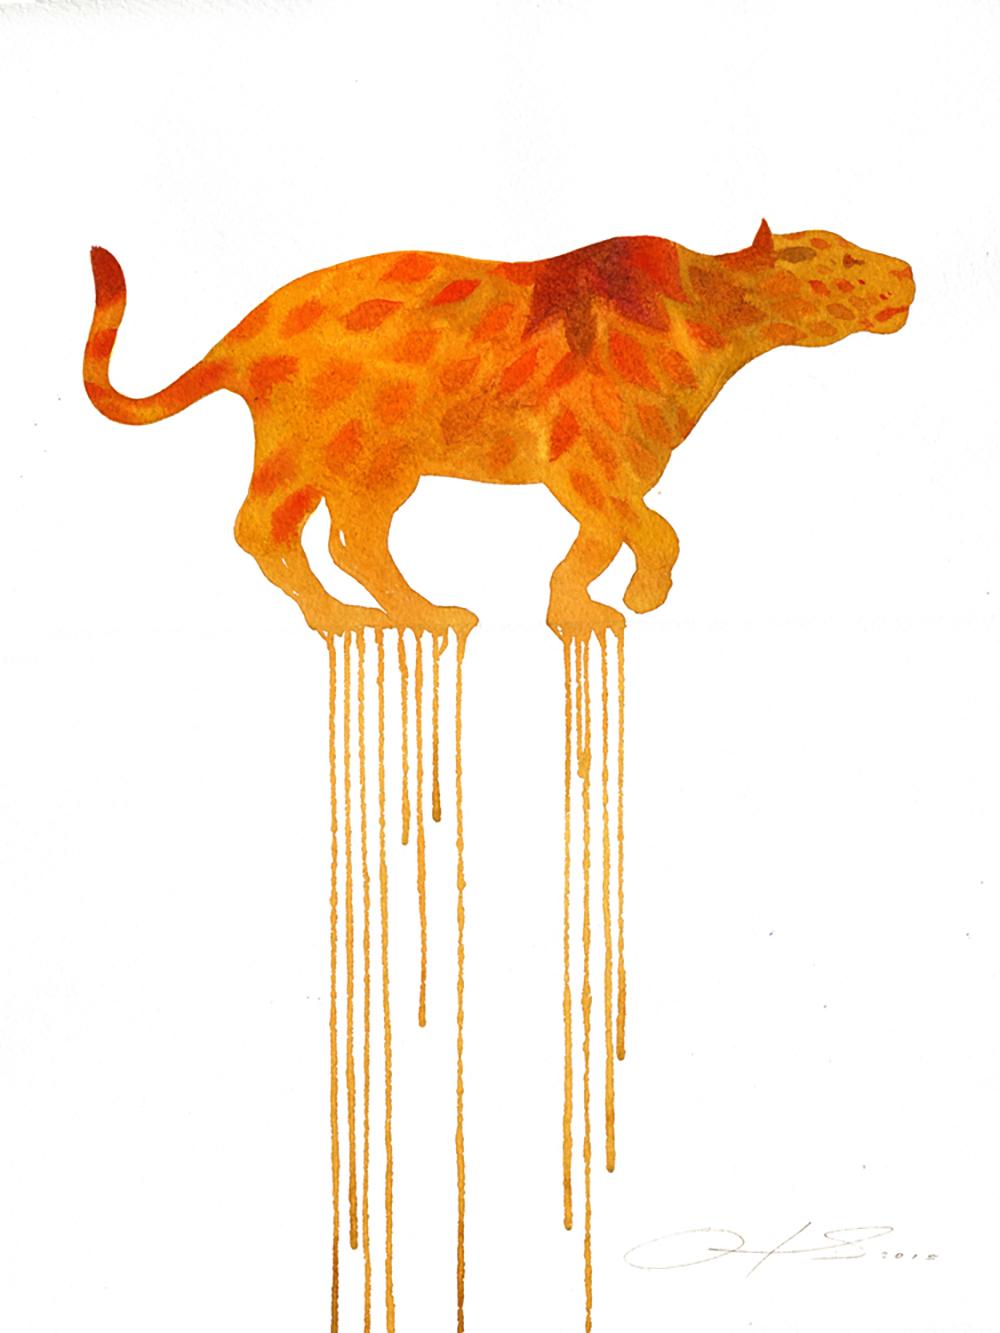 Animal Art Oliver Flores - "Blooming Jaguar", illustration à l'aquarelle et au crayon sur papier aquarelle